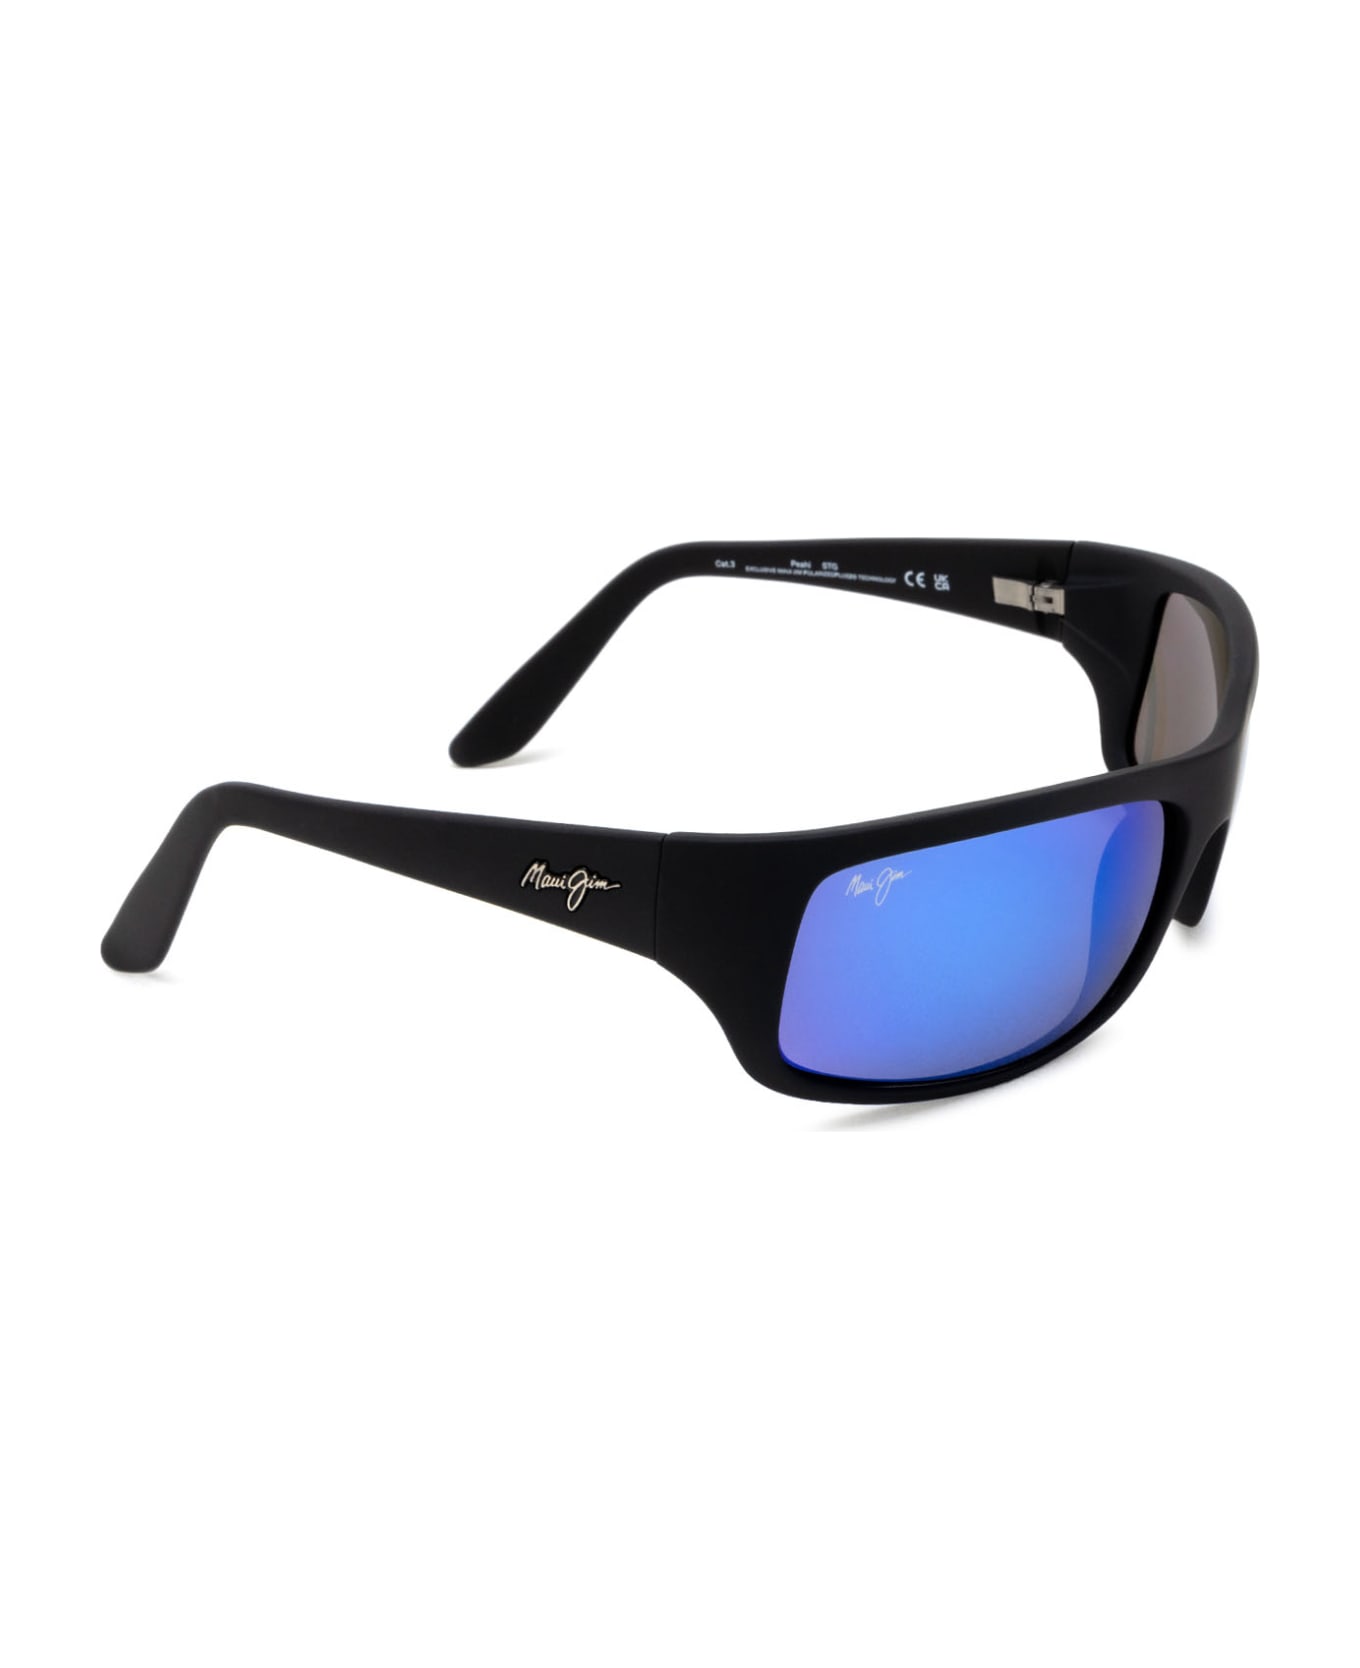 Maui Jim Mj0202s Black Sunglasses - Black サングラス